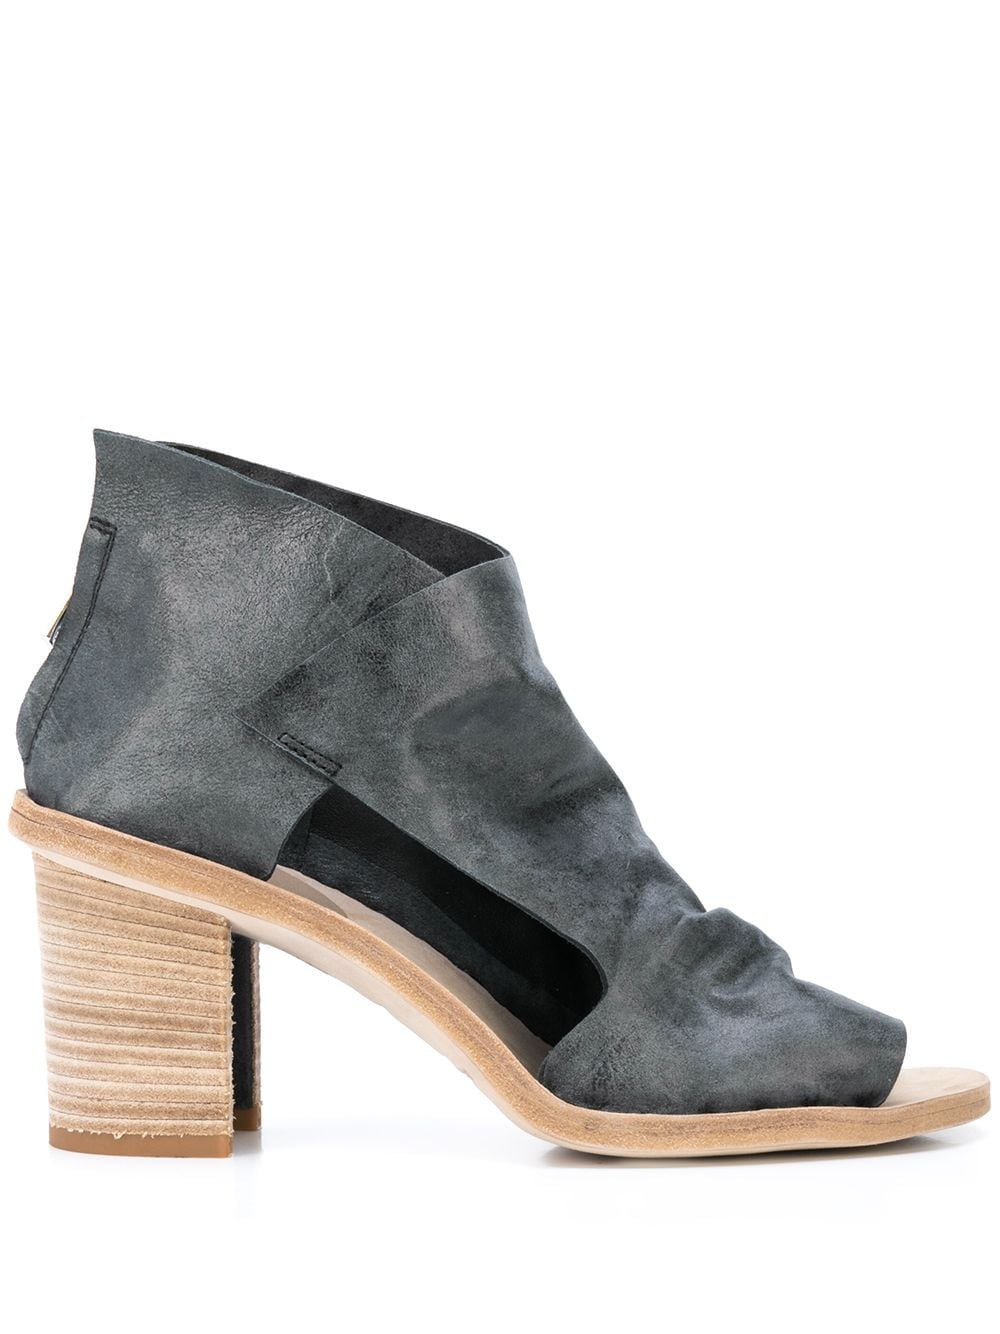 Officine Creative Sidoine 70mm Sandals In Grey